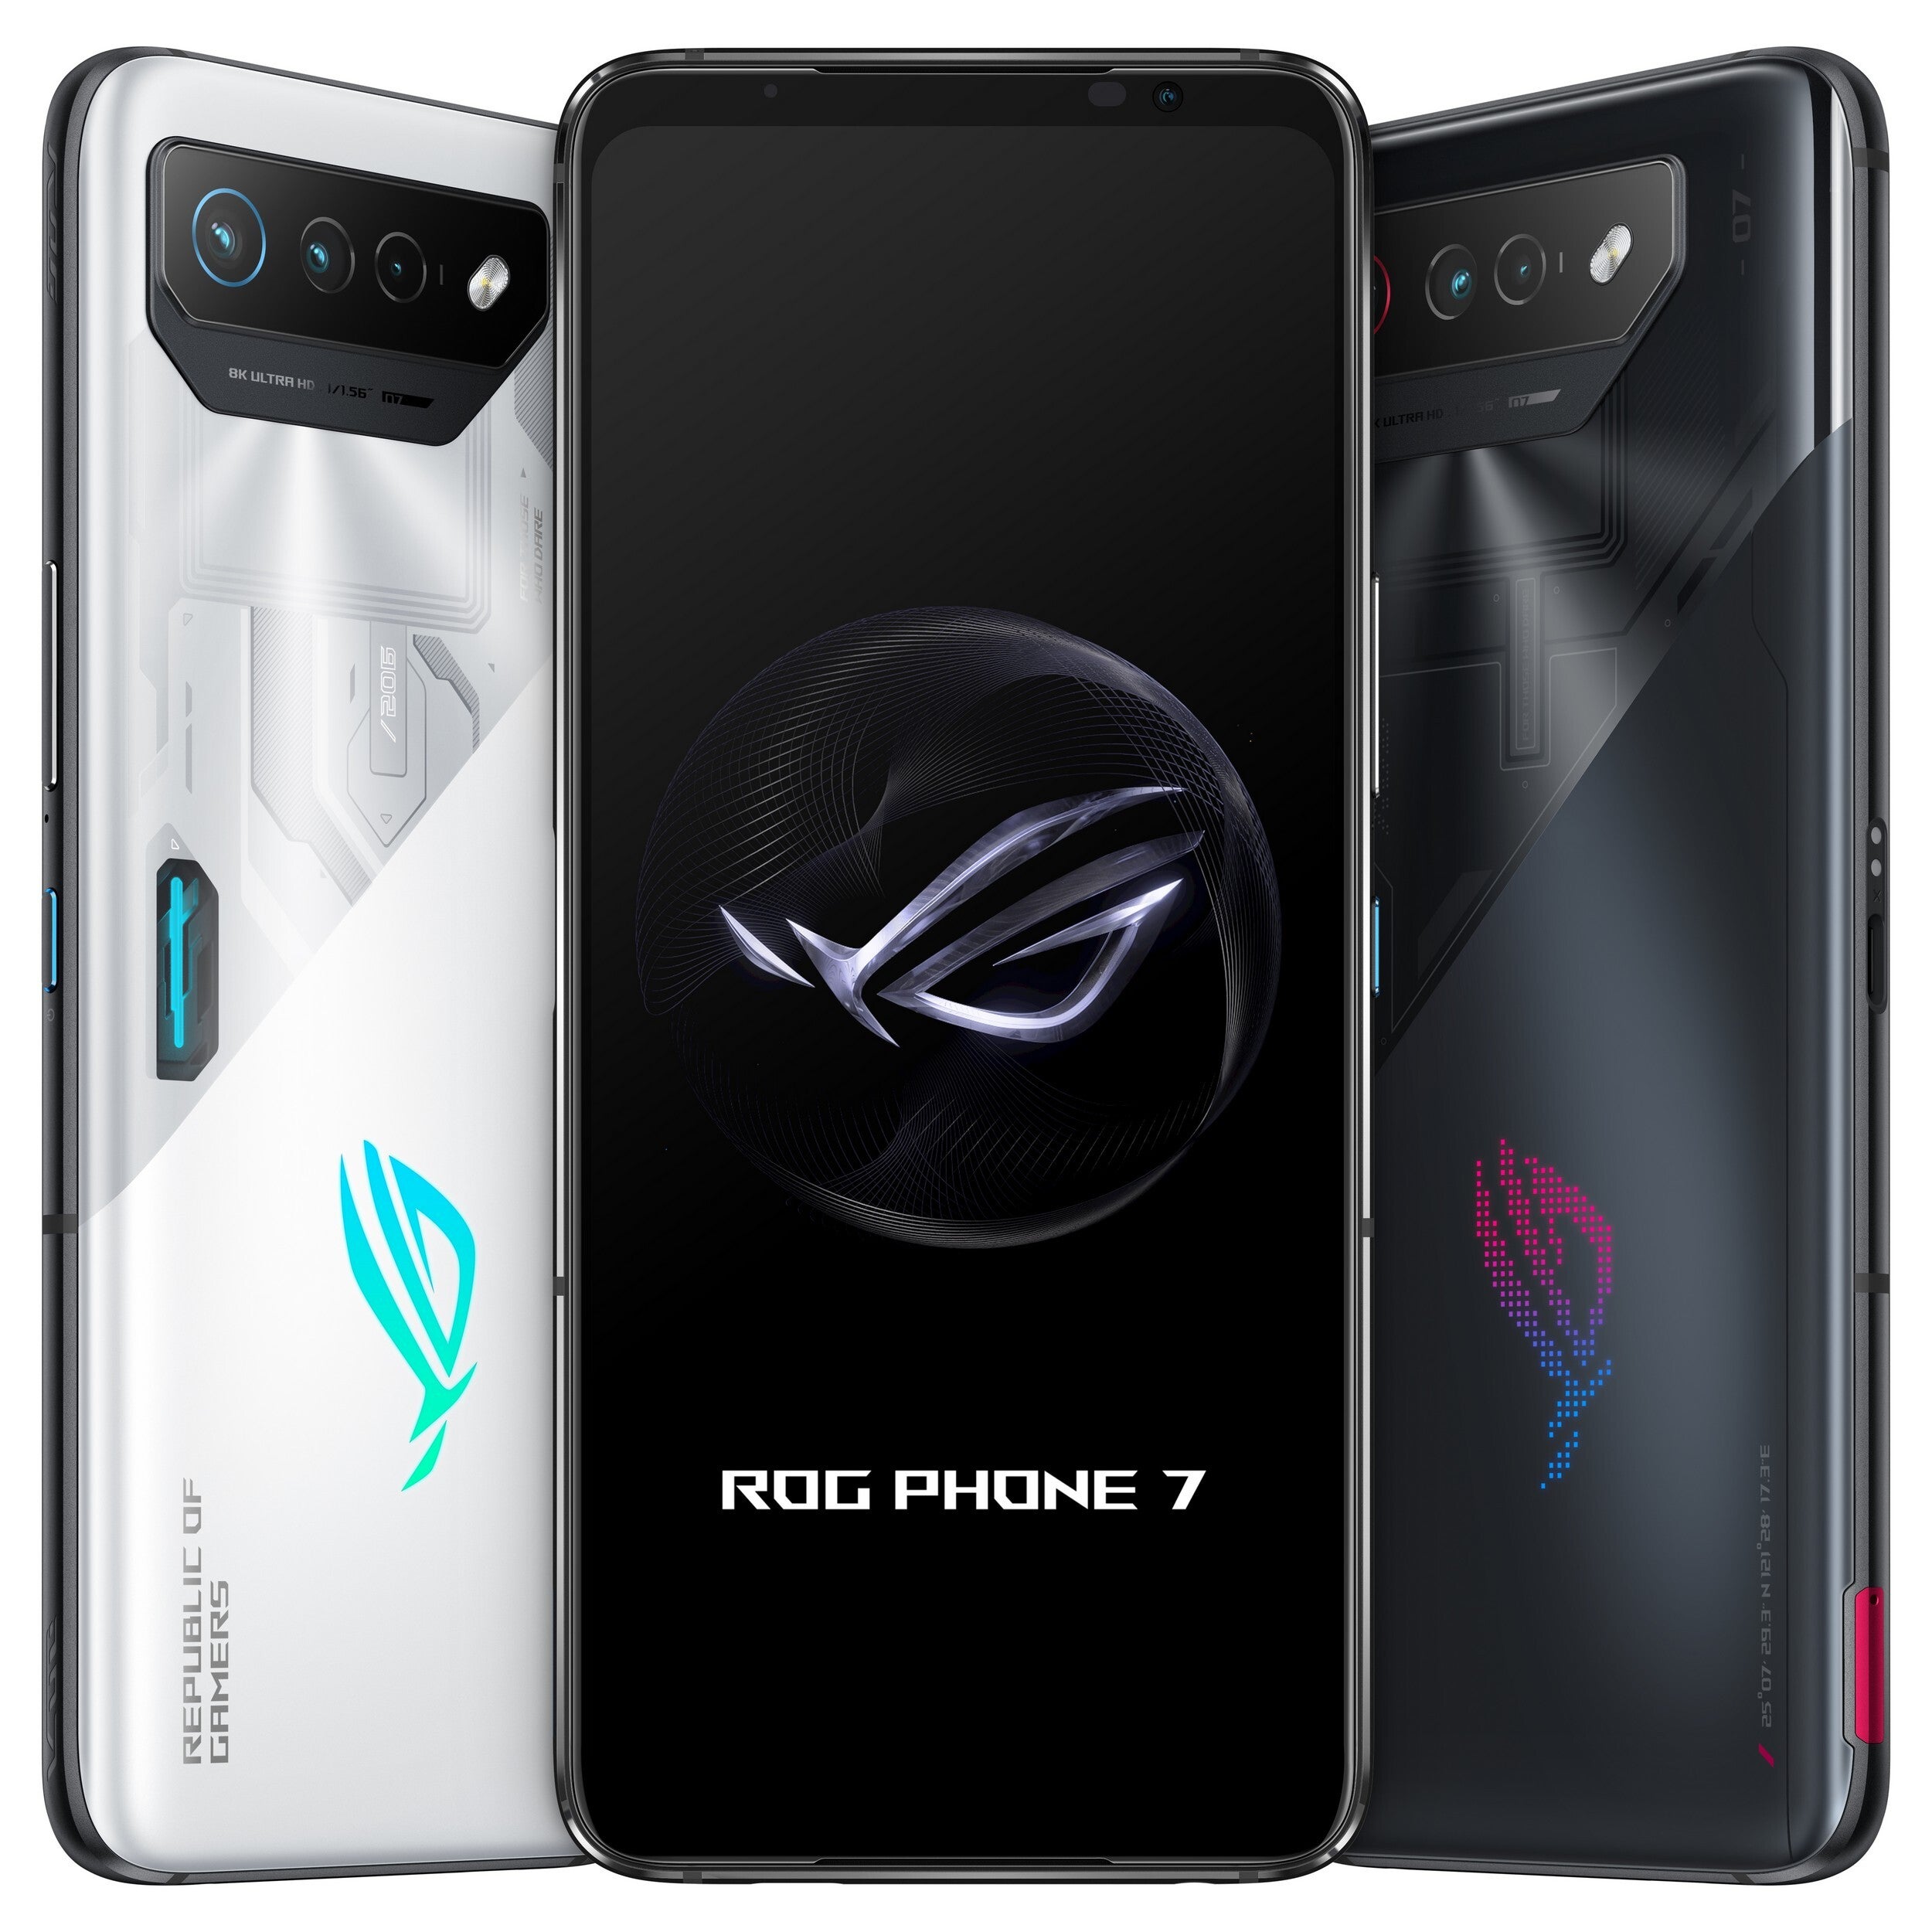 ایسوس دو گوشی ROG Phone 7 و ROG Phone 7 Ultimate را معرفی کرد